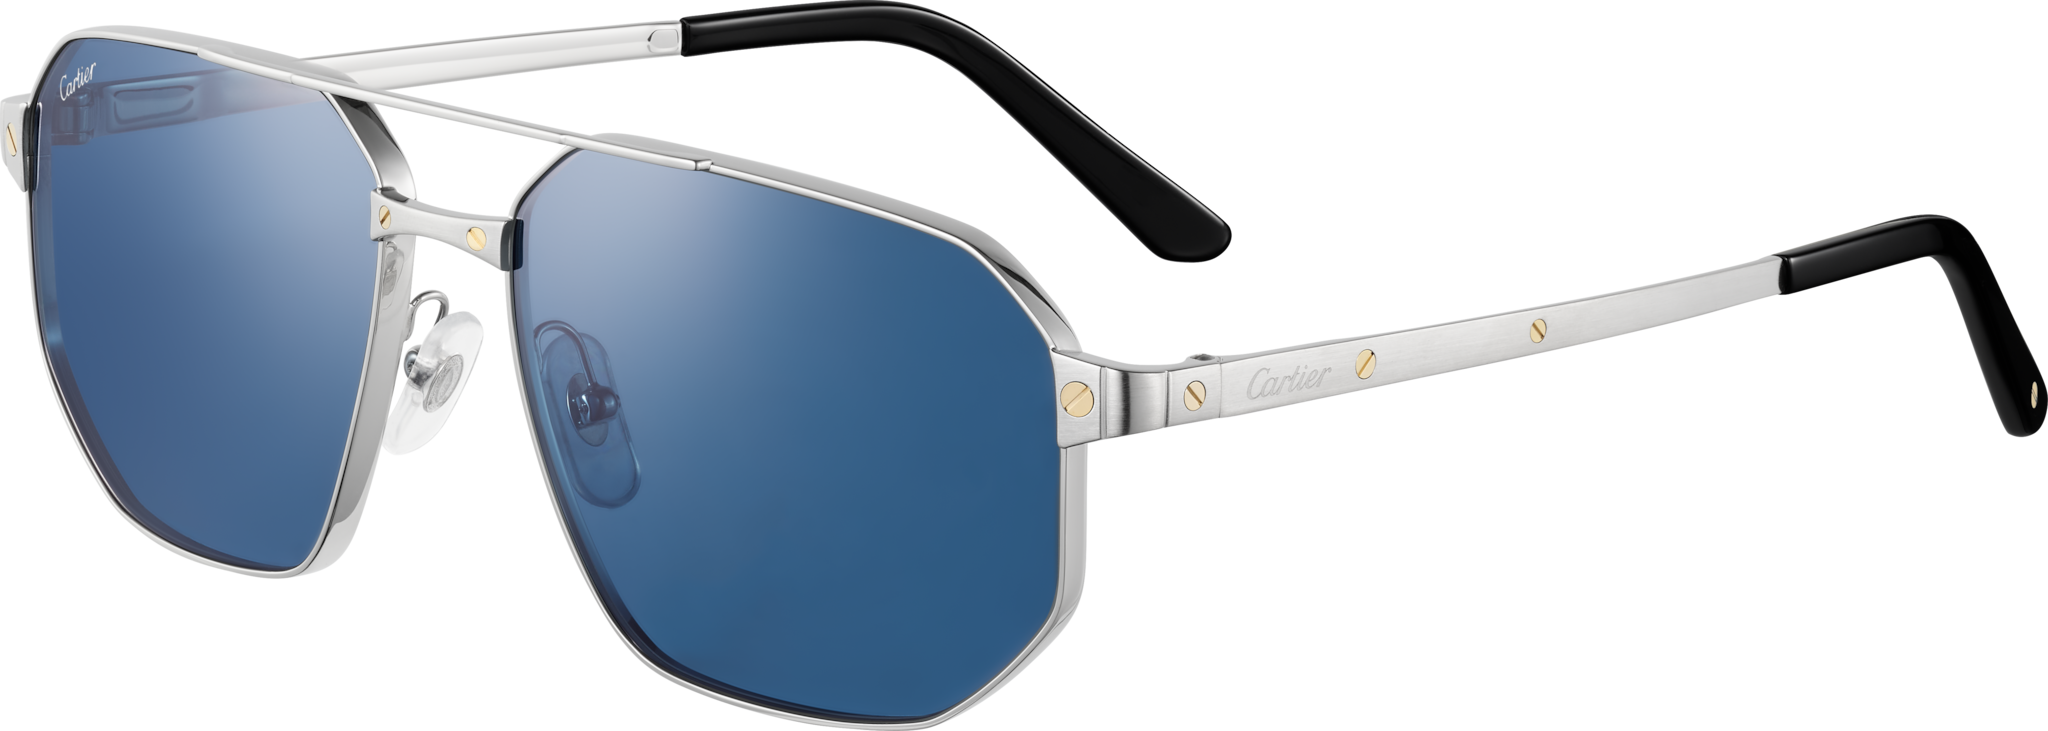 Gafas de sol Santos de CartierMetal acabado platino liso y cepillado, lentes azules